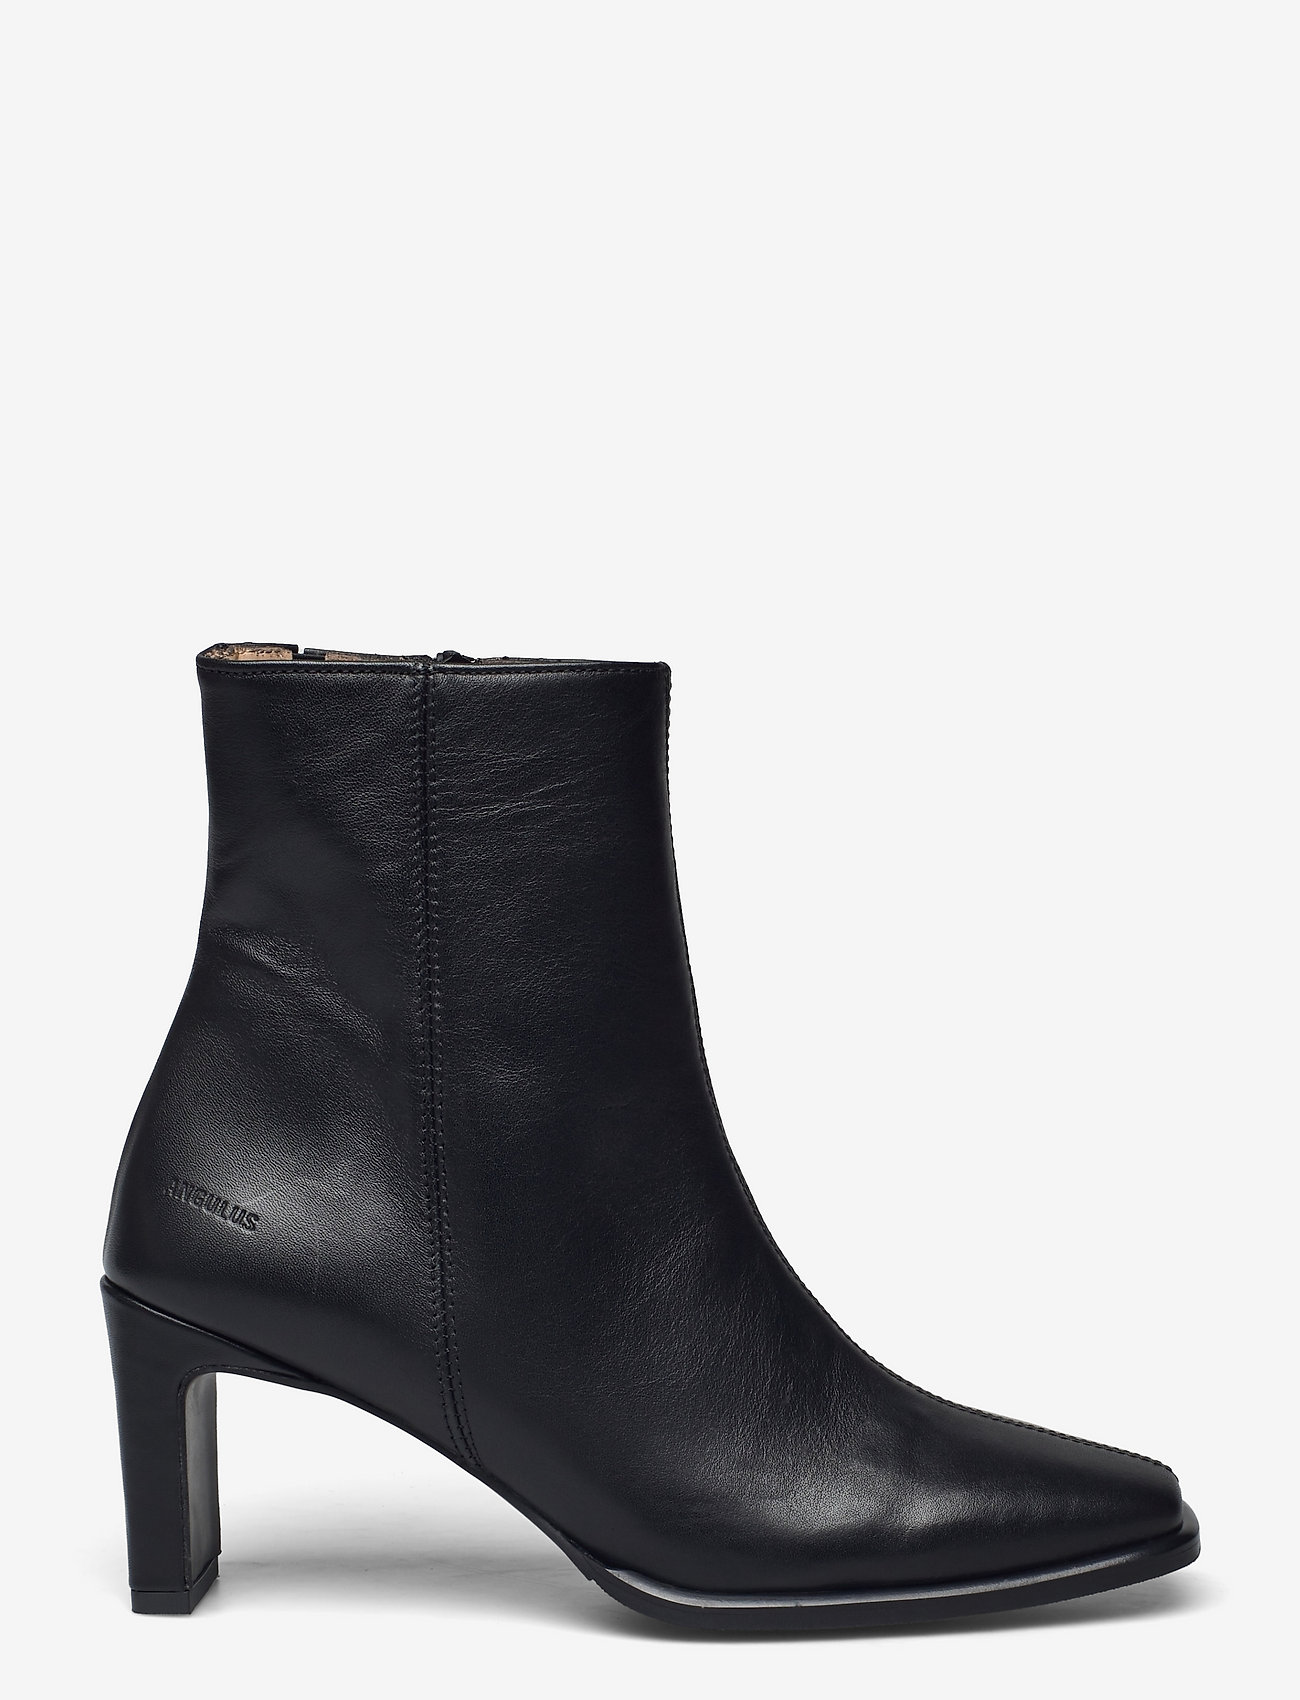 ANGULUS - Bootie - block heel - with zippe - støvletter - 1604/001 black/black - 1